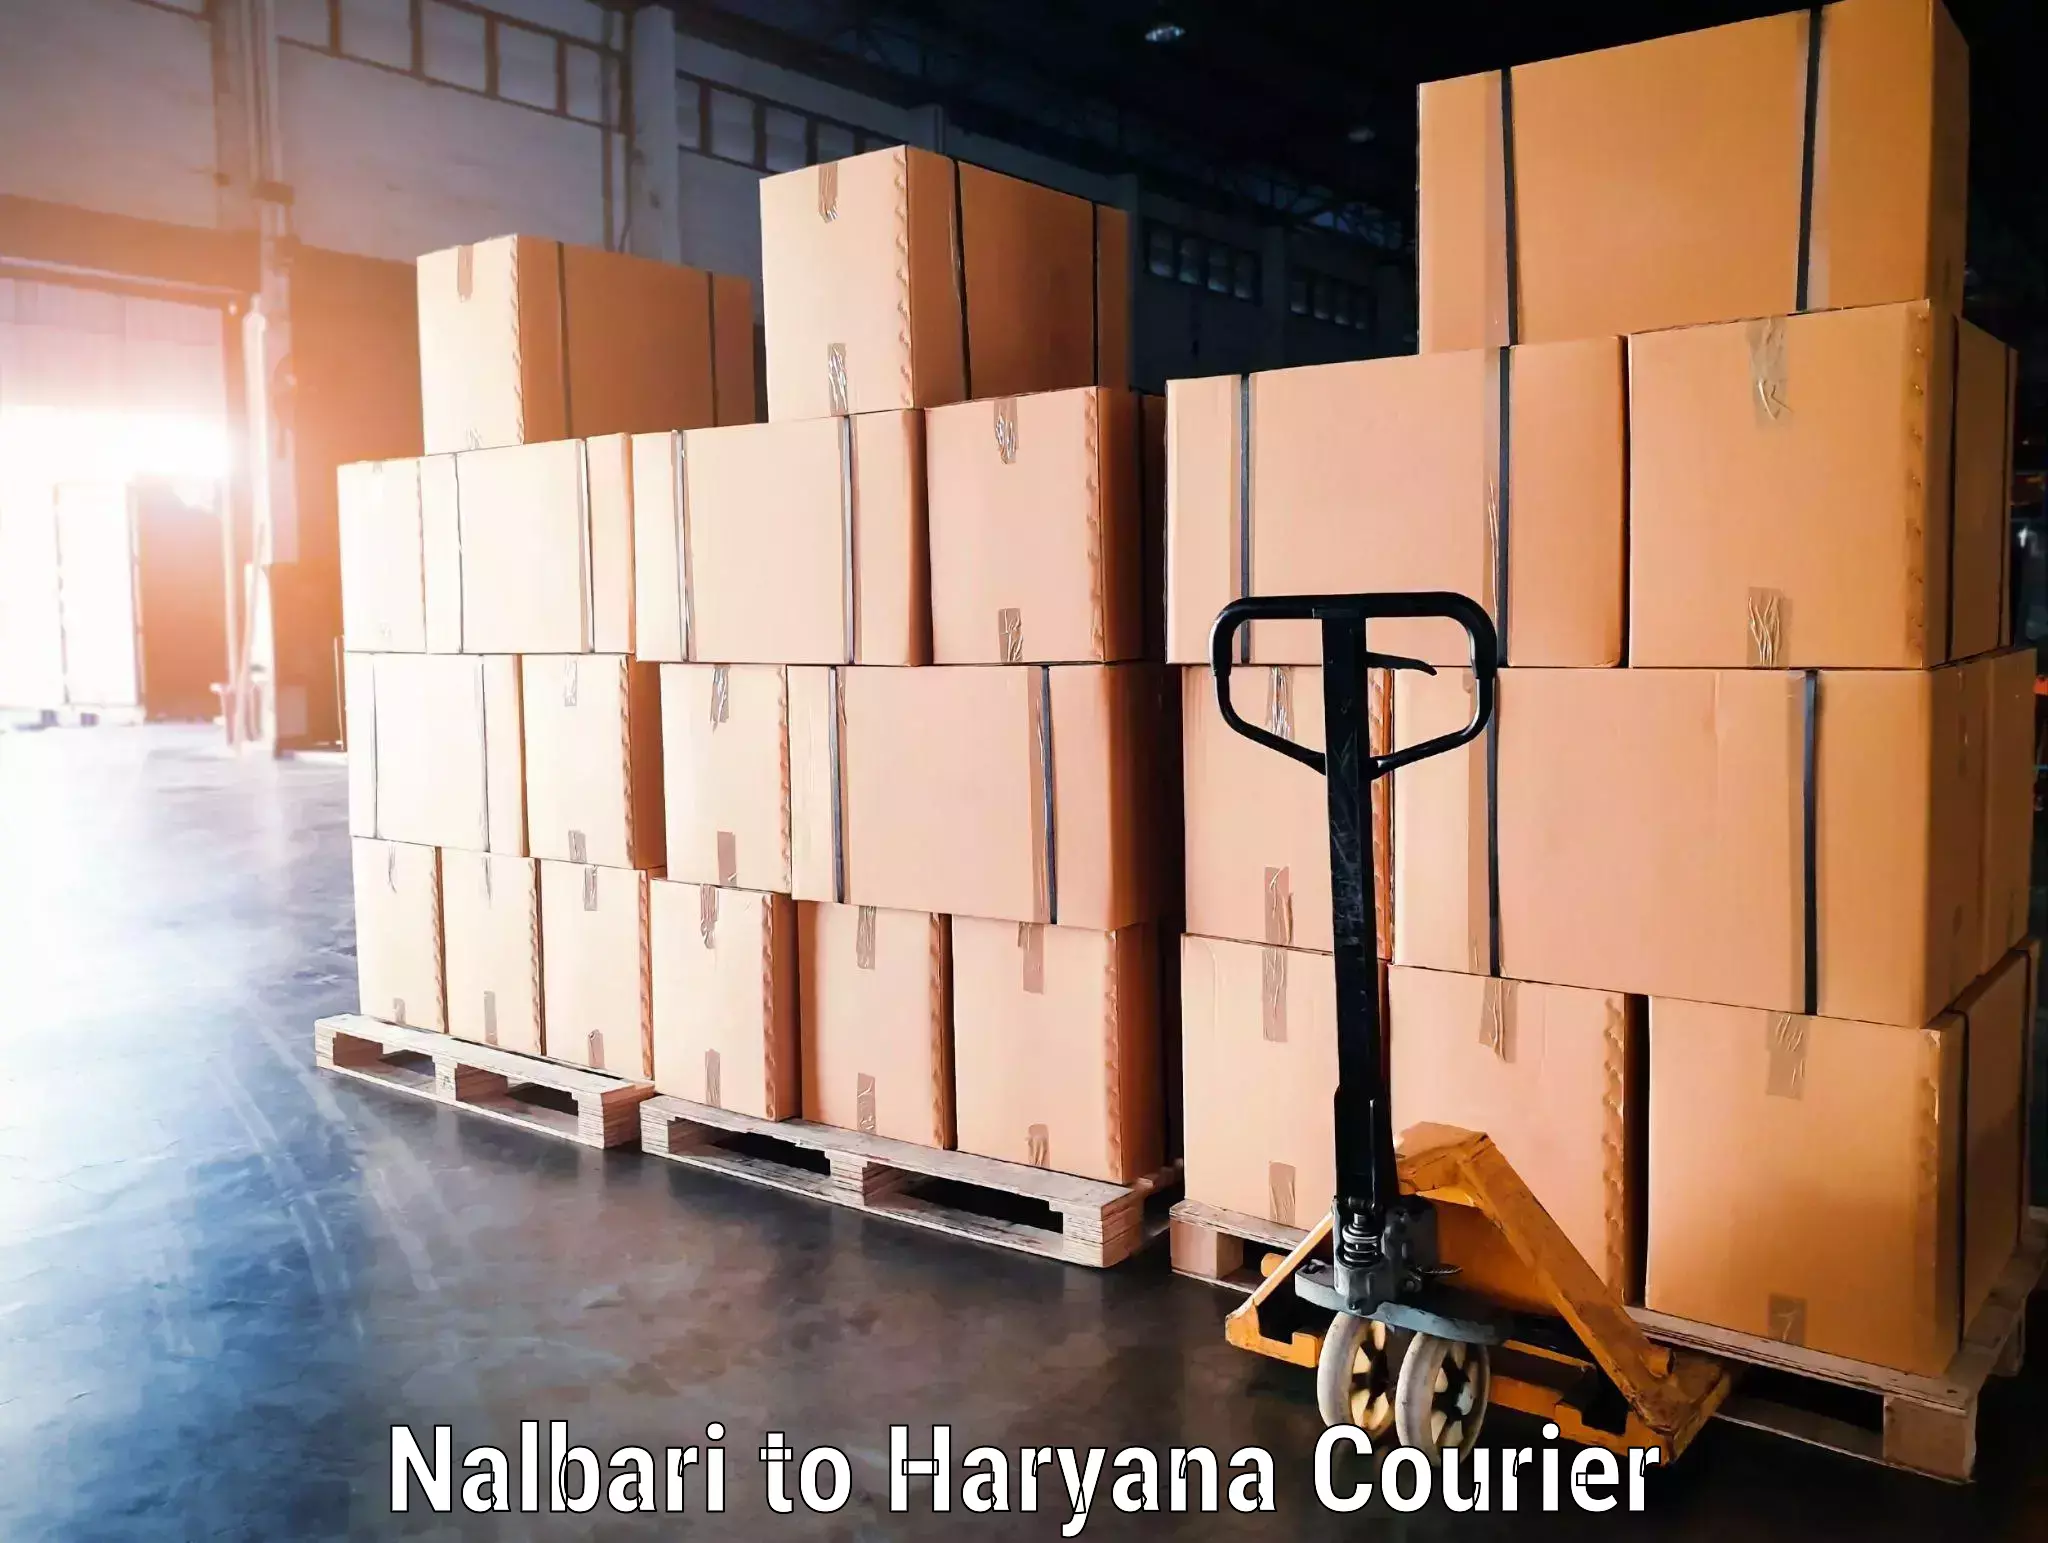 Luggage delivery network Nalbari to Kurukshetra University